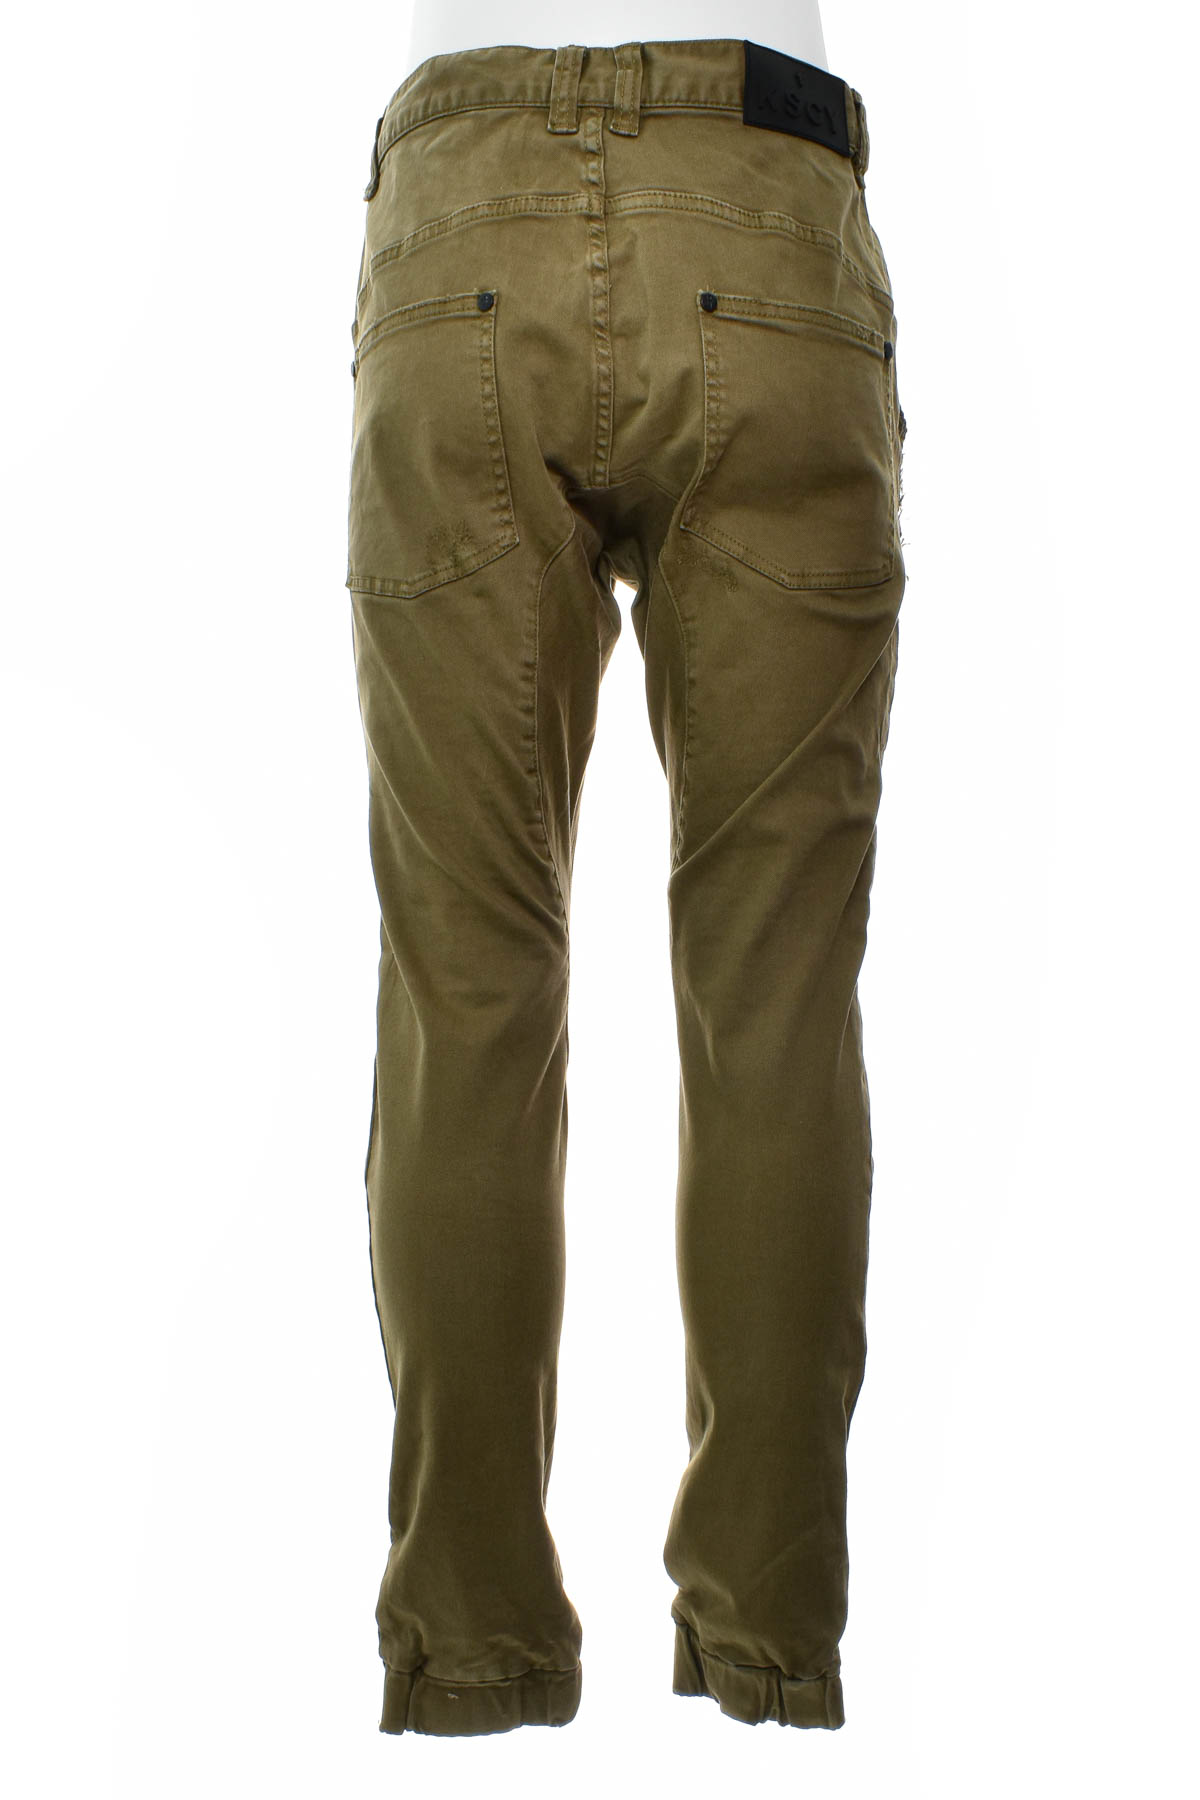 Pantalon pentru bărbați - KSCY - 1